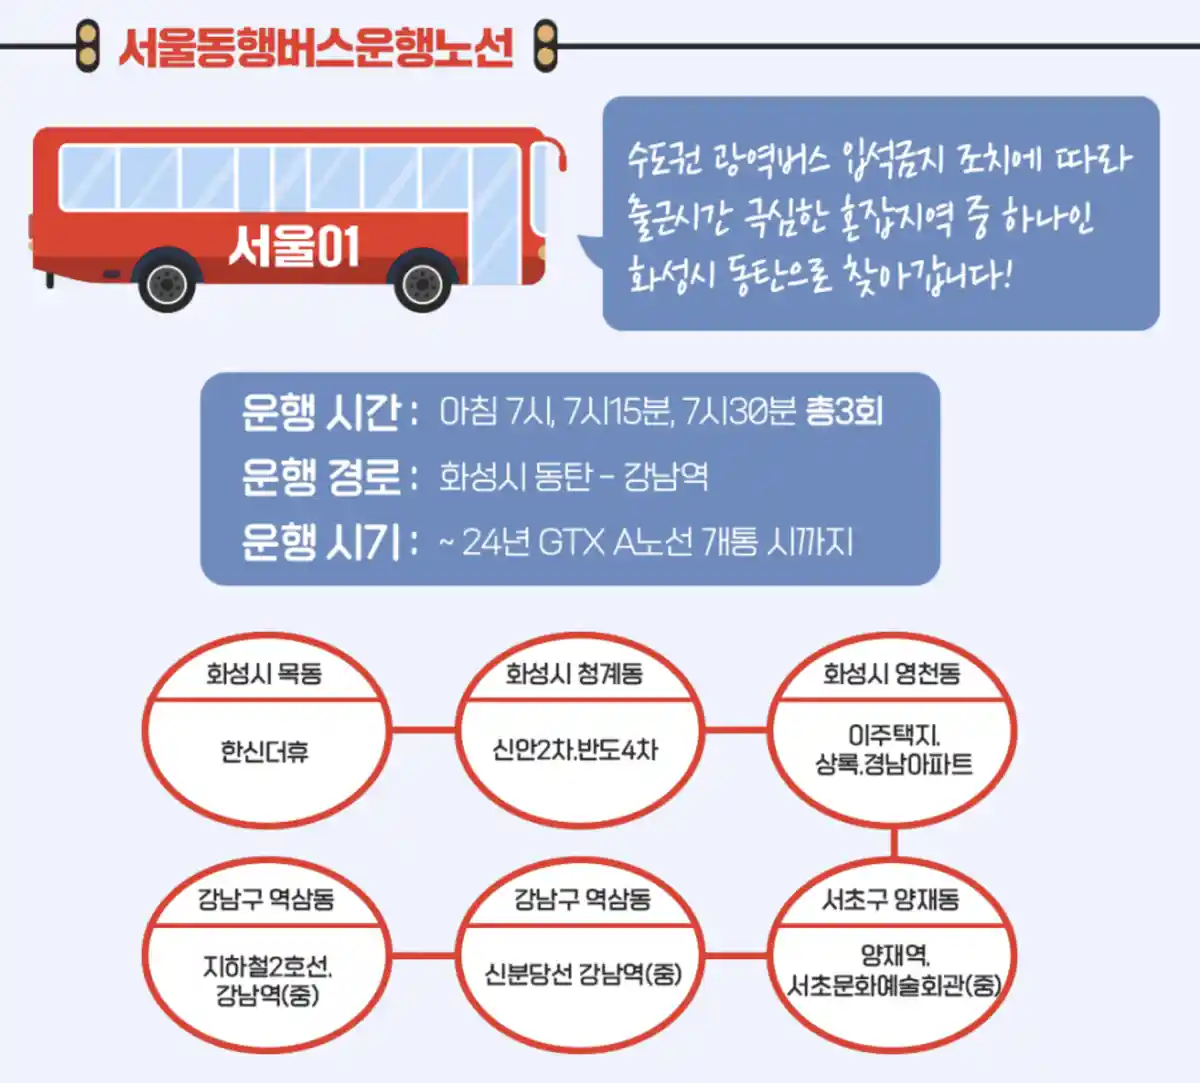 서울동행버스-01번-화성시한신더휴출발-지하철2호선강남역도착-노선